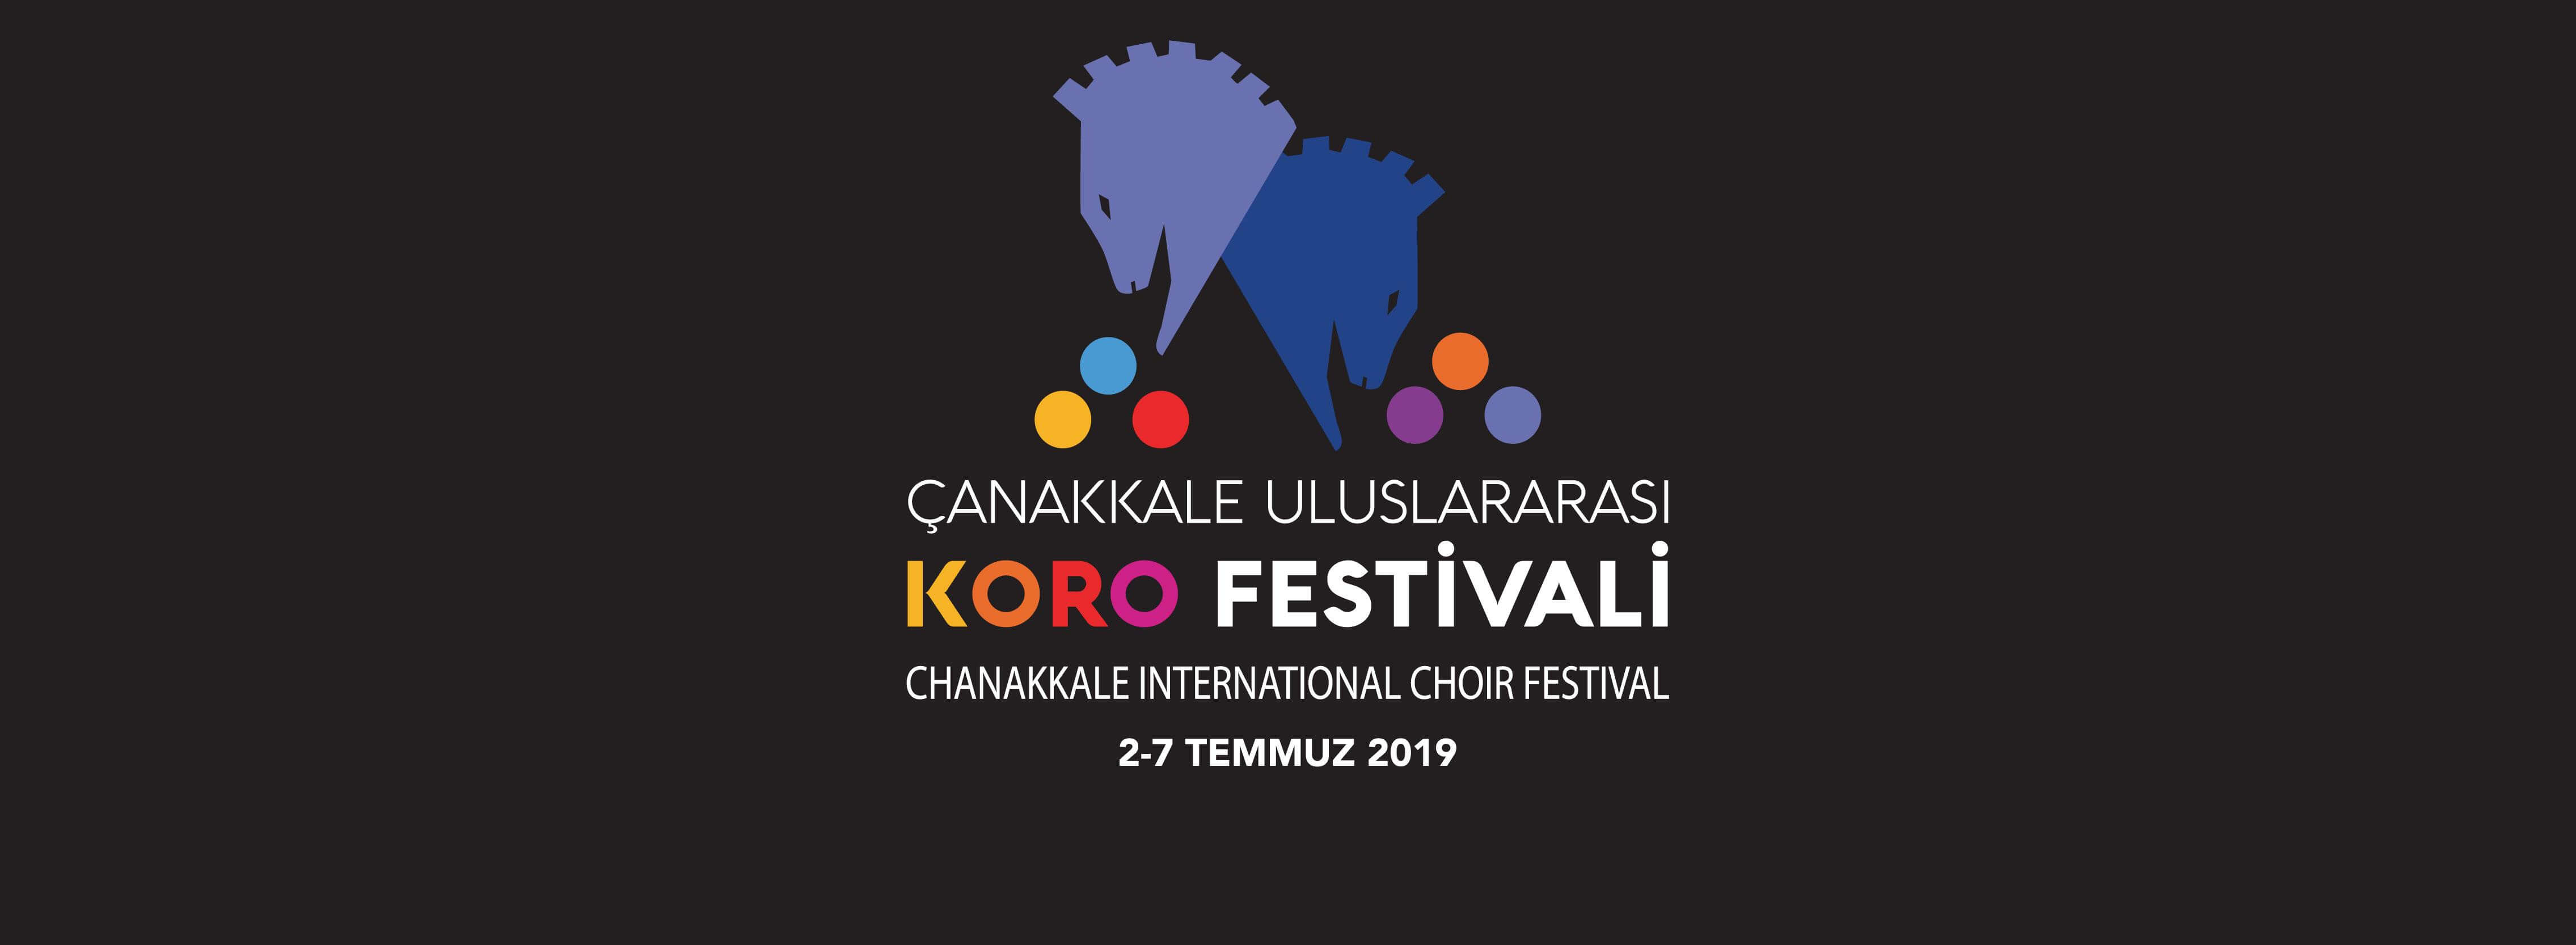 Çanakkale Uluslararası Koro Festivali 2 Temmuz'da Başlıyor…